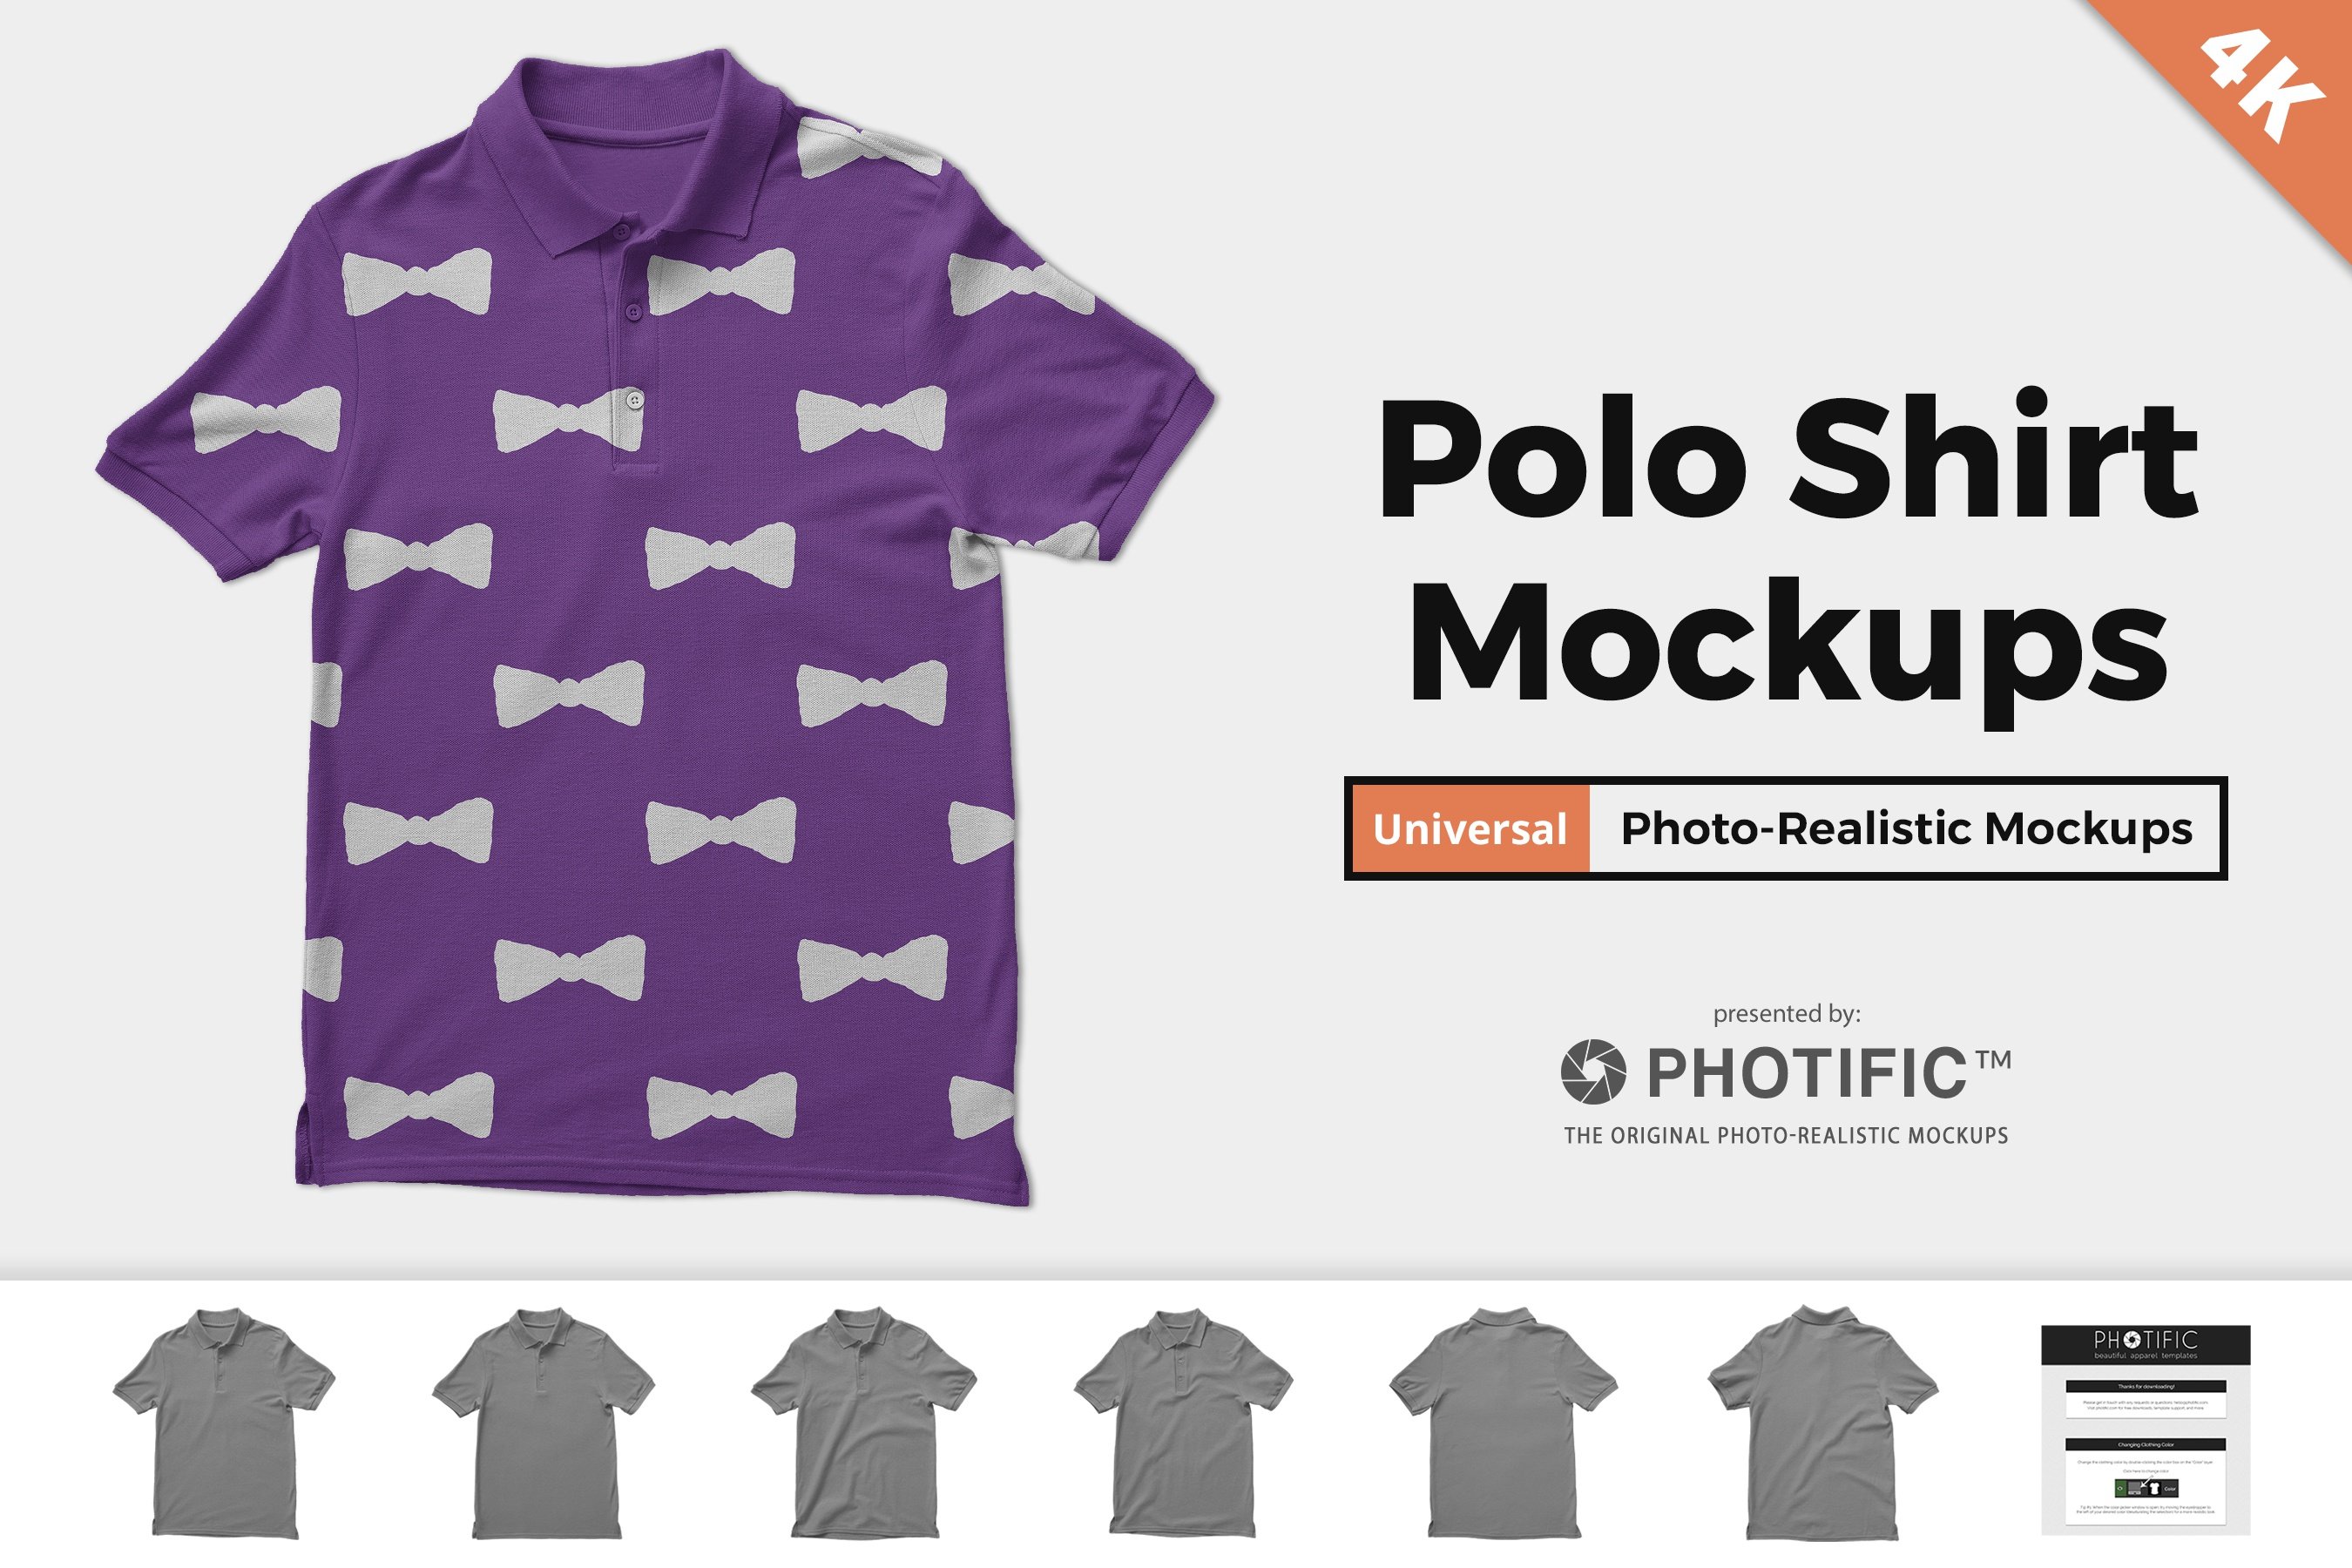 Polo Shirt Mockups cover image.